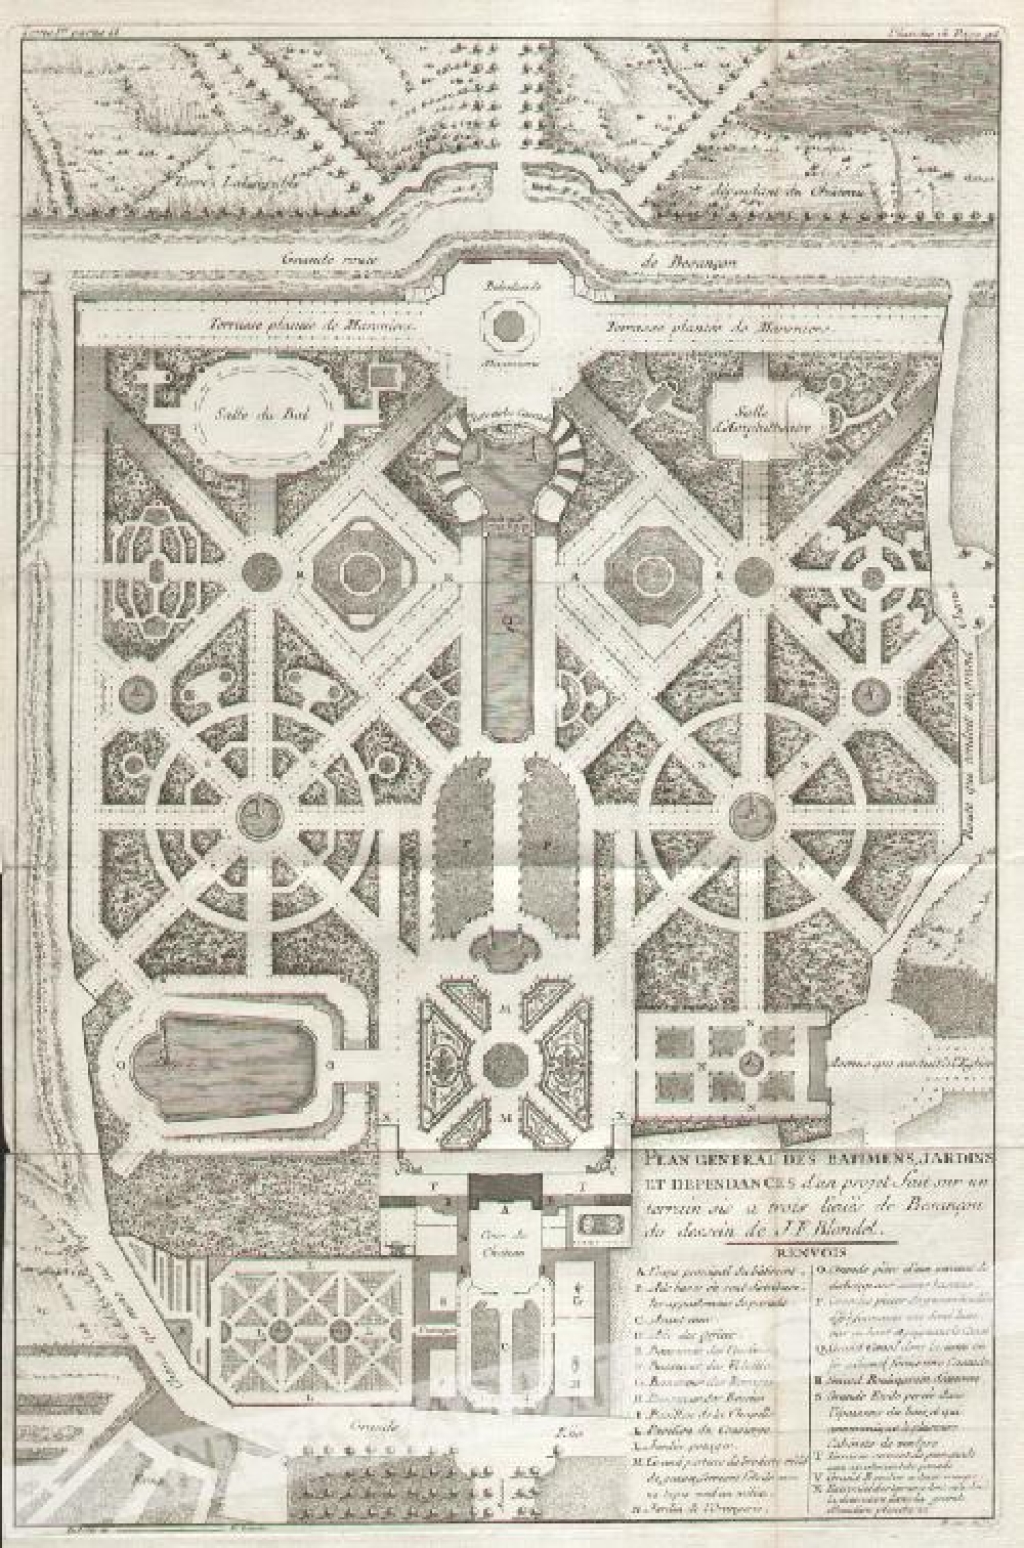 [rycina, 1737-38] Plan general des batimens, jardins et dependances d'un projet fait sur un terrain sis a trois lieues de Besancon du dessein de J.F. Blondel.